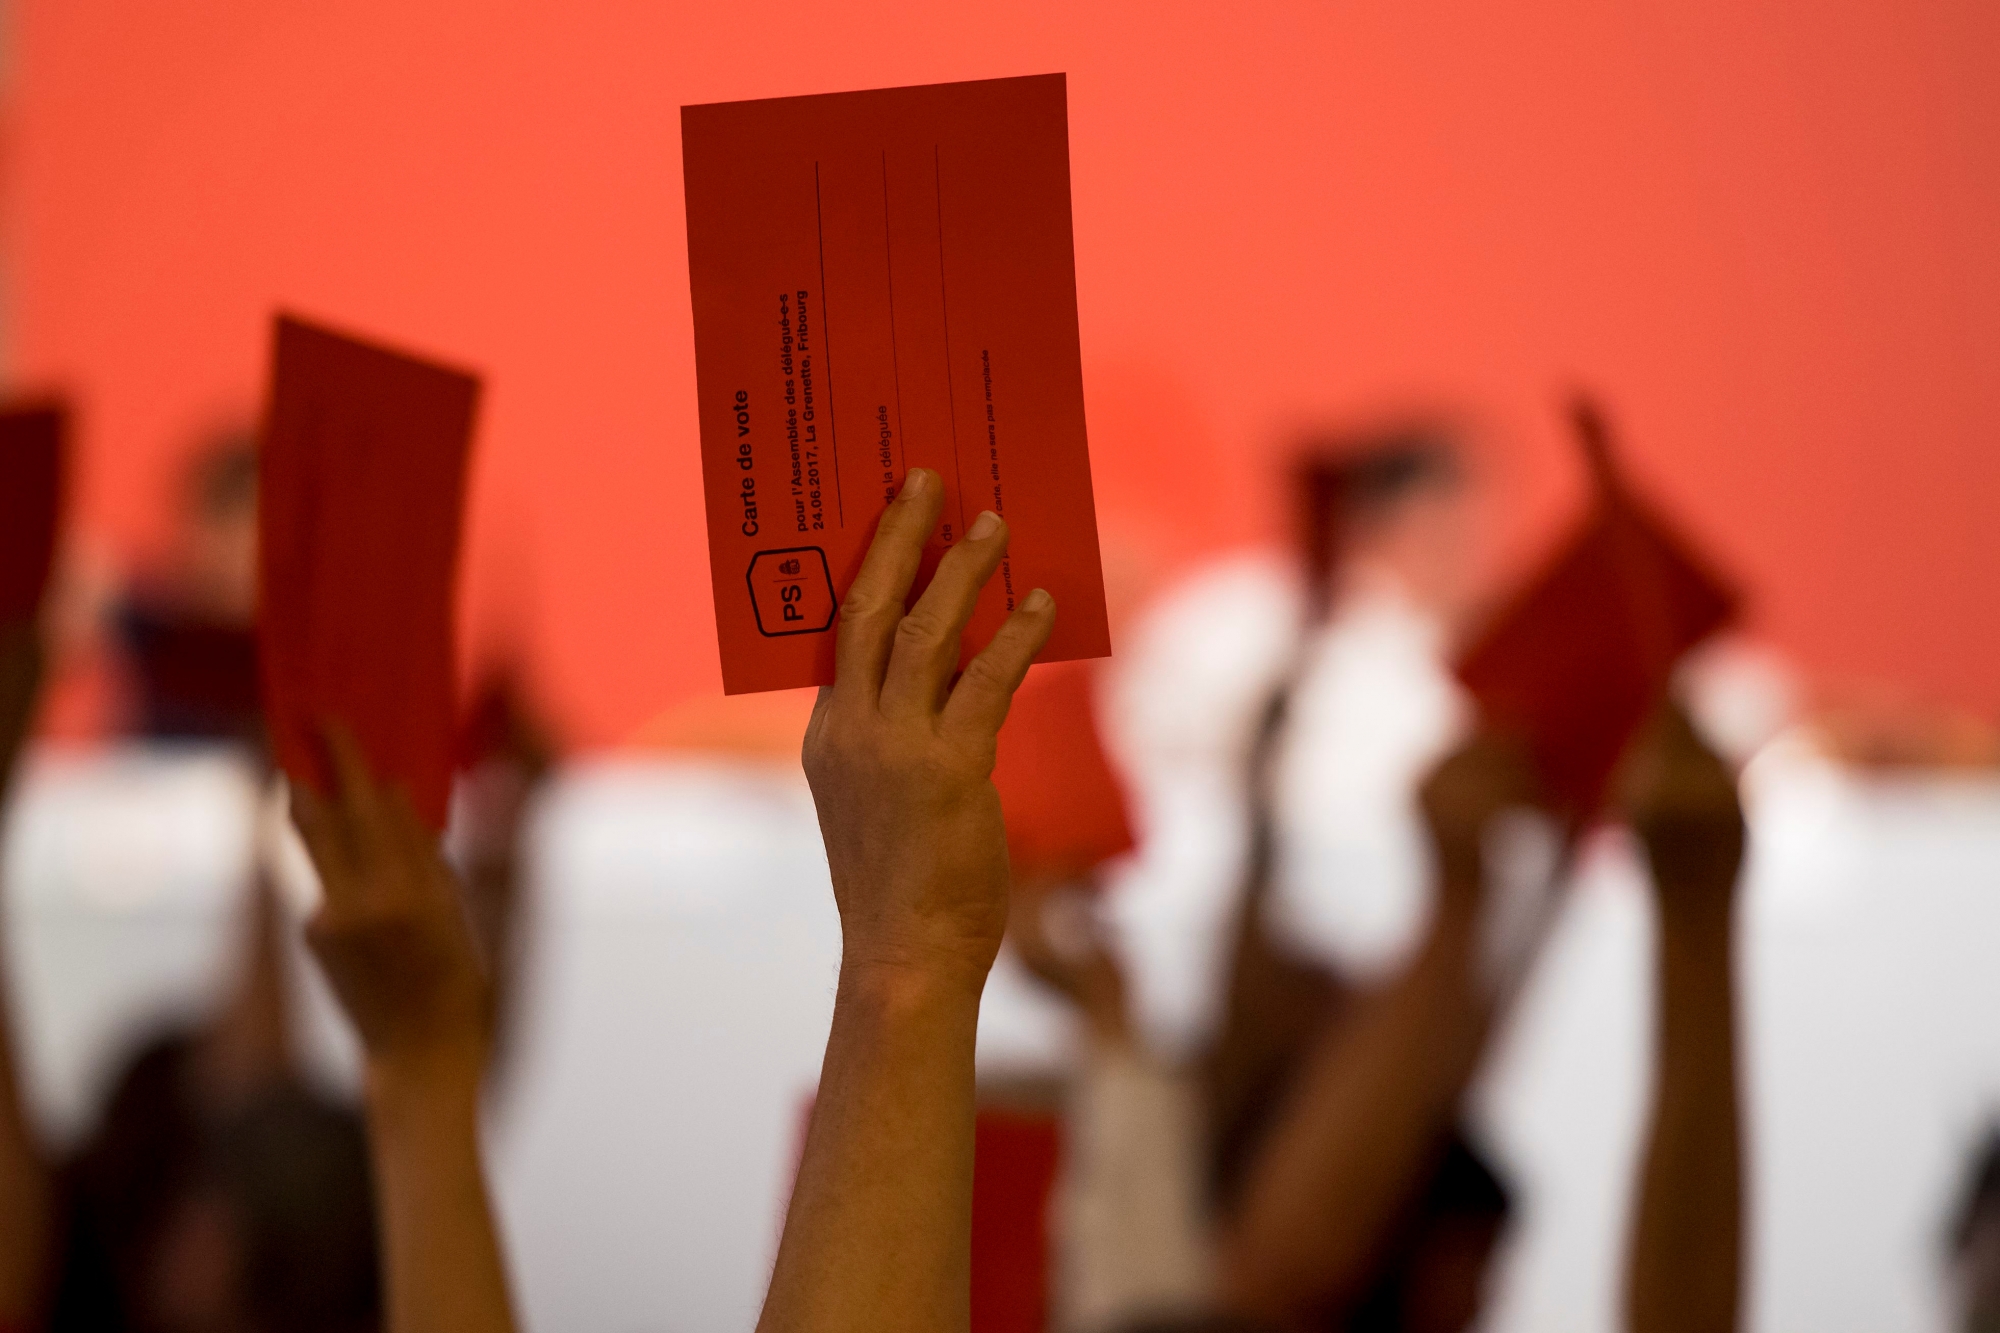 Un delegue montre sa carte de vote lors de l'Assemblee des delegues du PS Suisse, SP, ce samedi 24 juin 2017 a Fribourg. (KEYSTONE/Jean-Christophe Bott) SCHWEIZ PARTEI SP DELEGIERTENVERSAMMLUNG